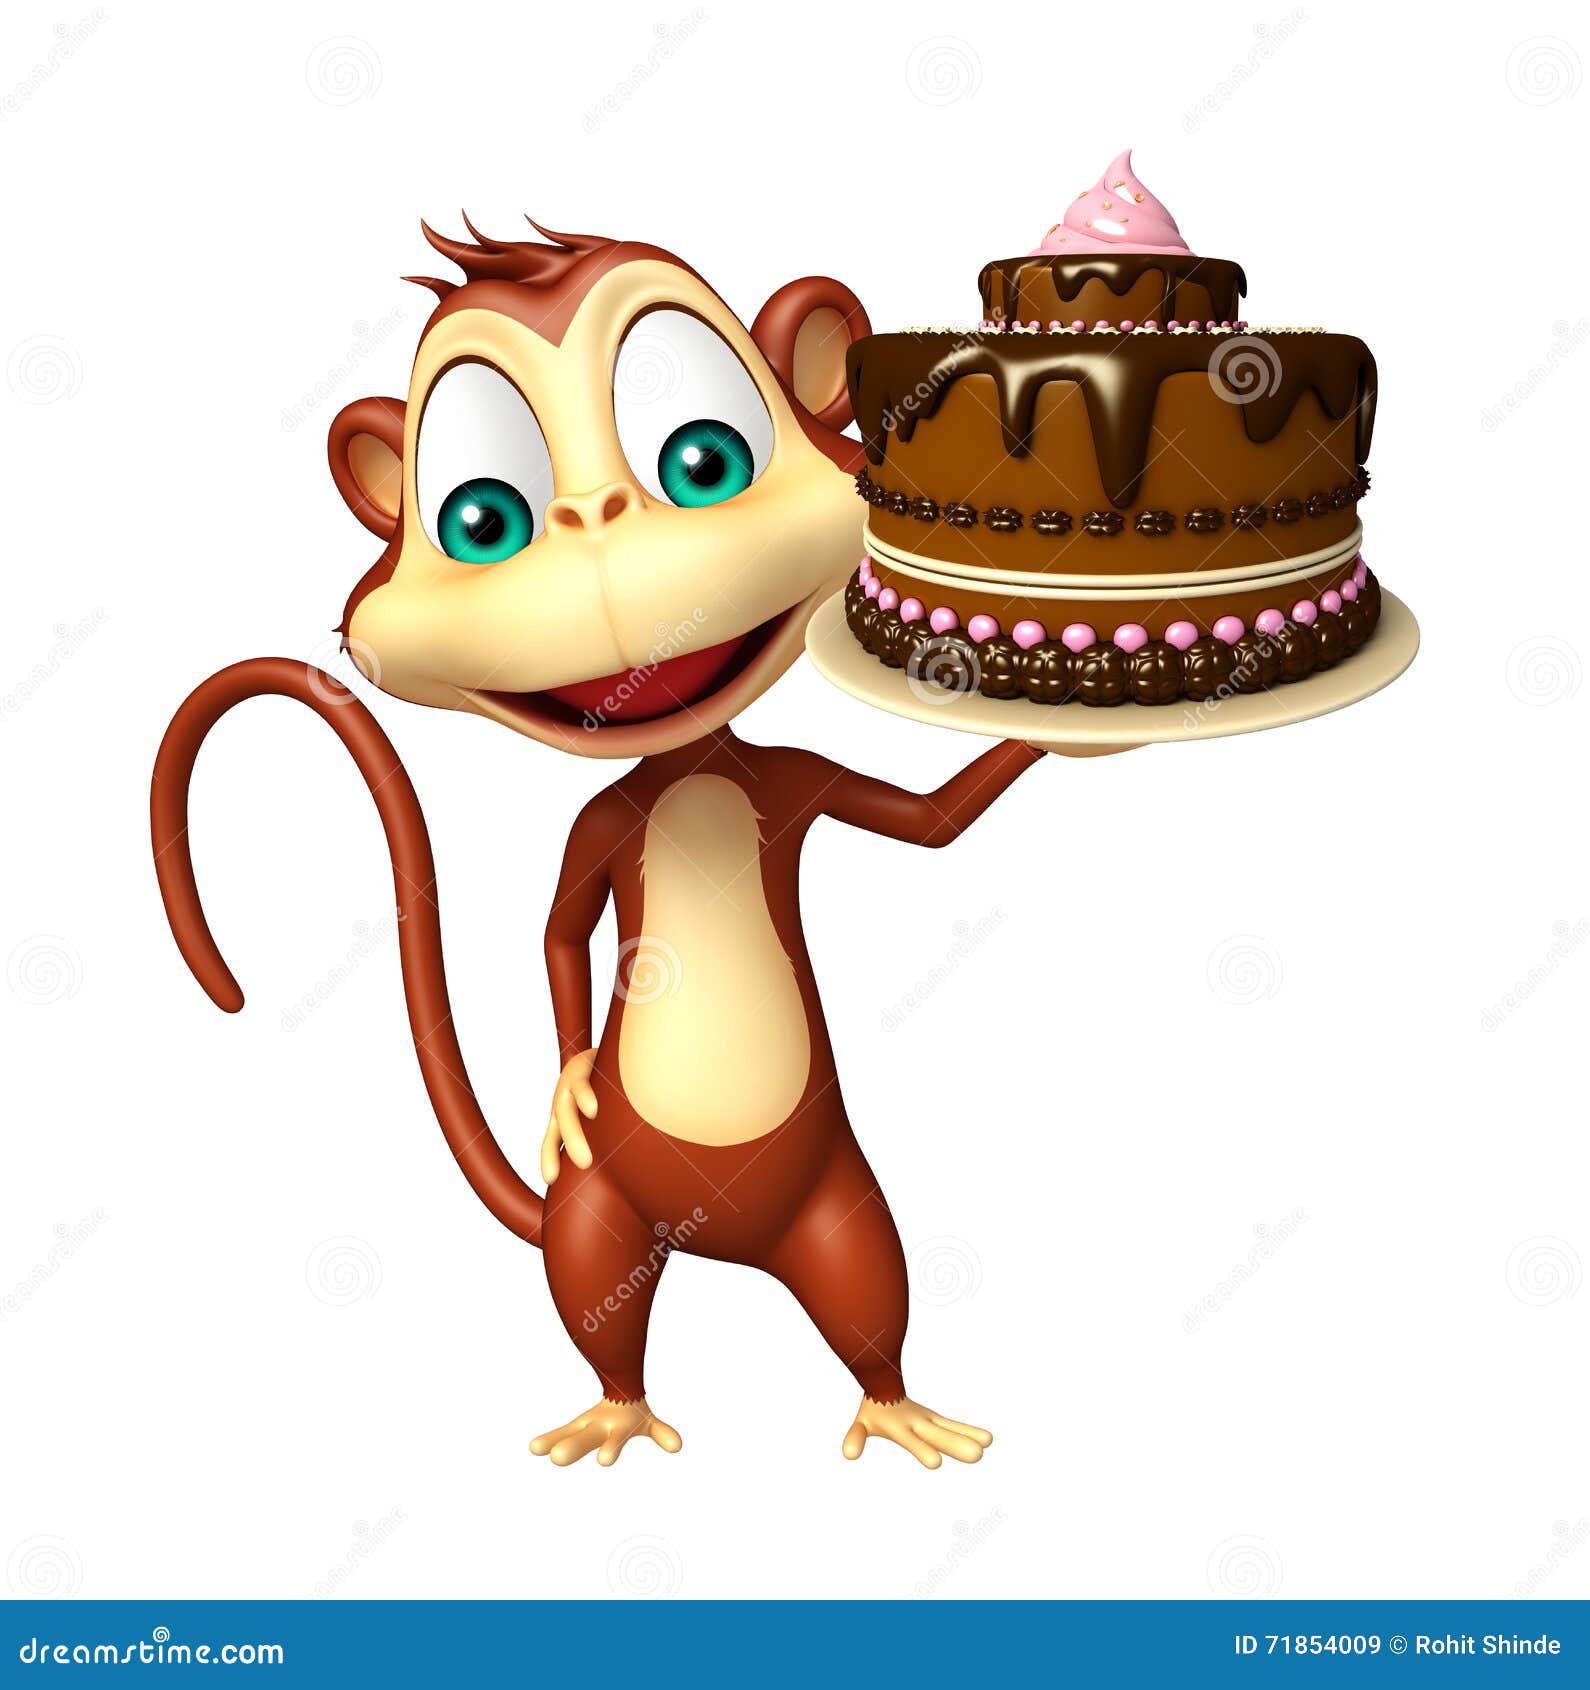 猴子蛋糕图片新款图片-图库-五毛网